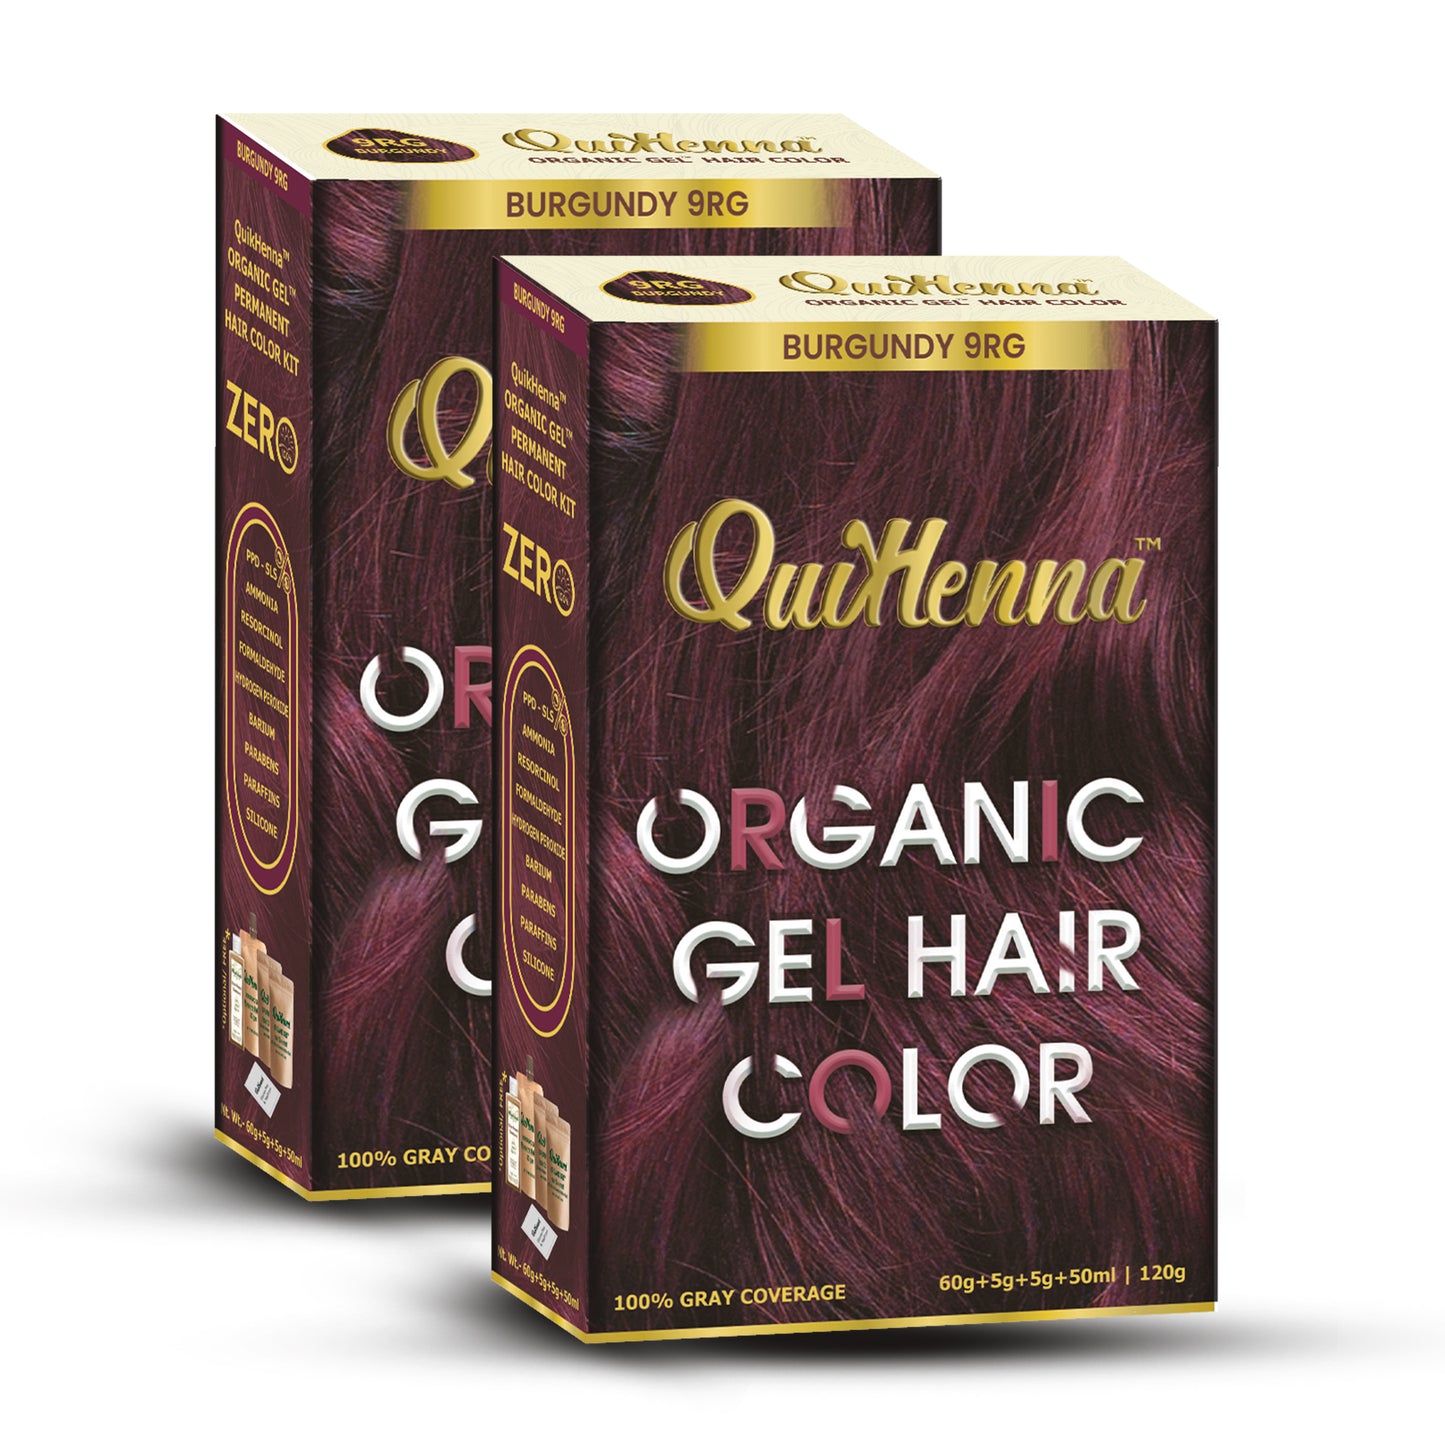 QuikHenna Organic Gel Hair Colour-30